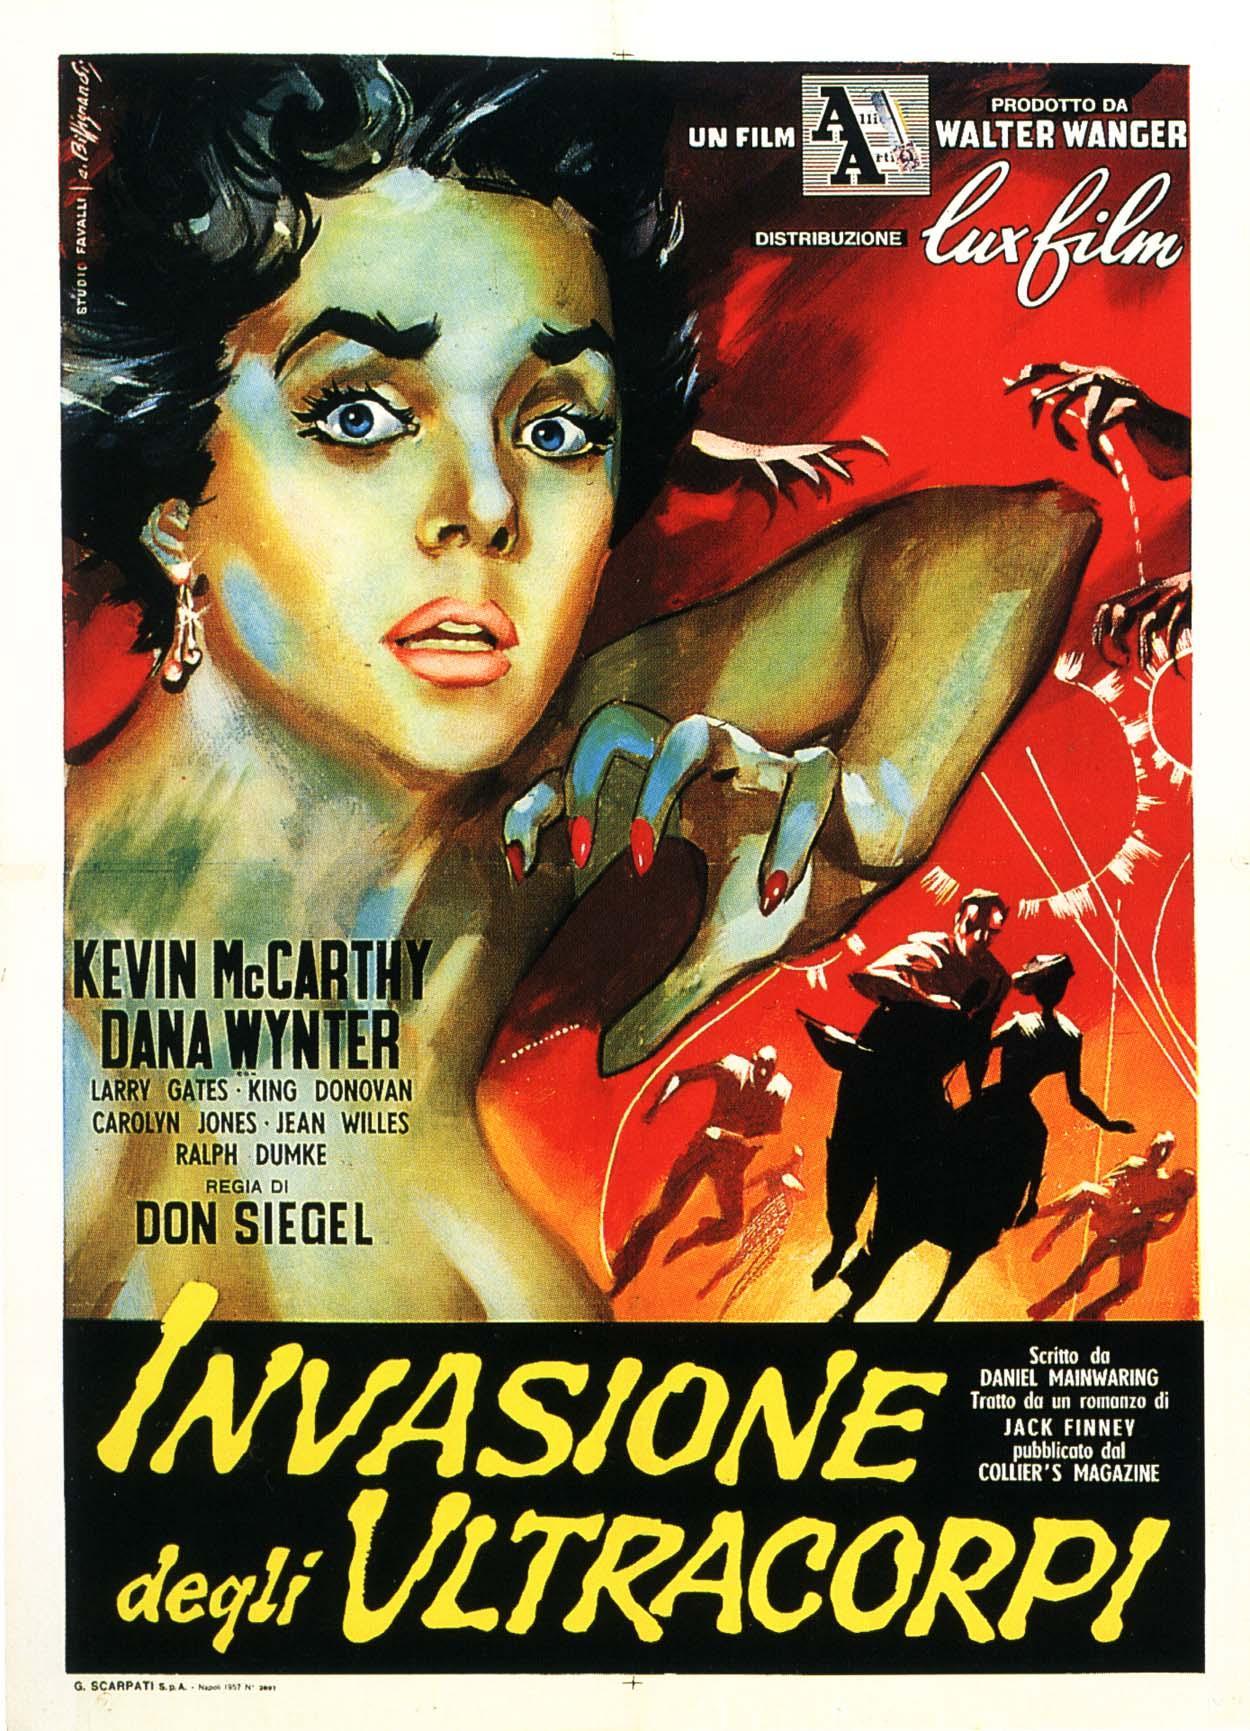 Постер фильма Вторжение похитителей тел | Invasion of the Body Snatchers